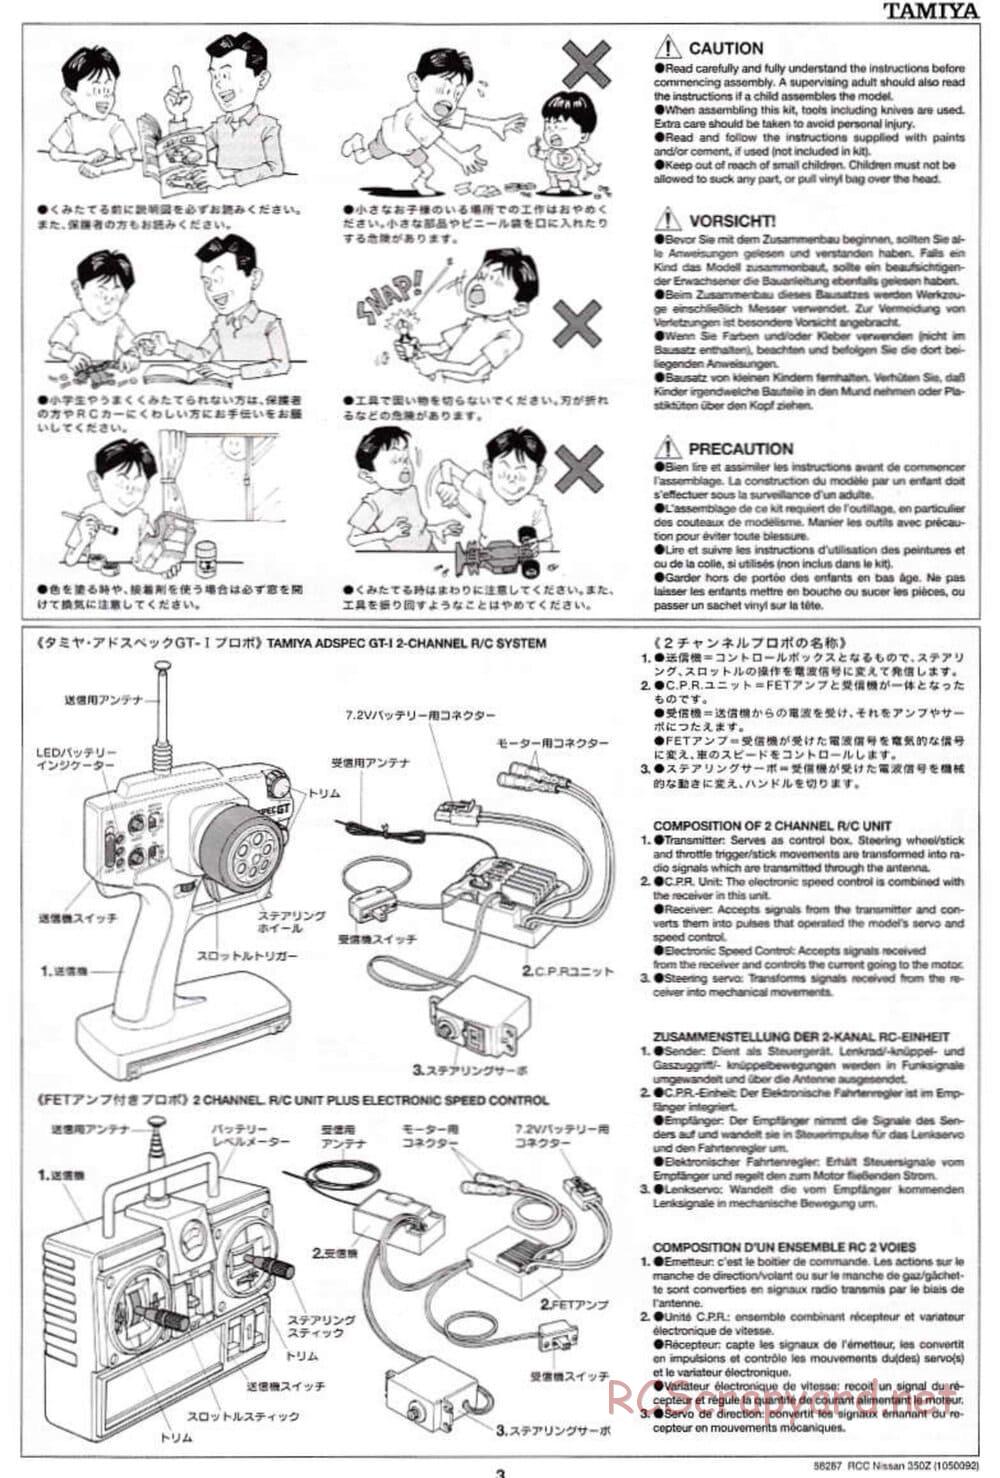 Tamiya - Nissan 350Z - TL-01 Chassis - Manual - Page 3